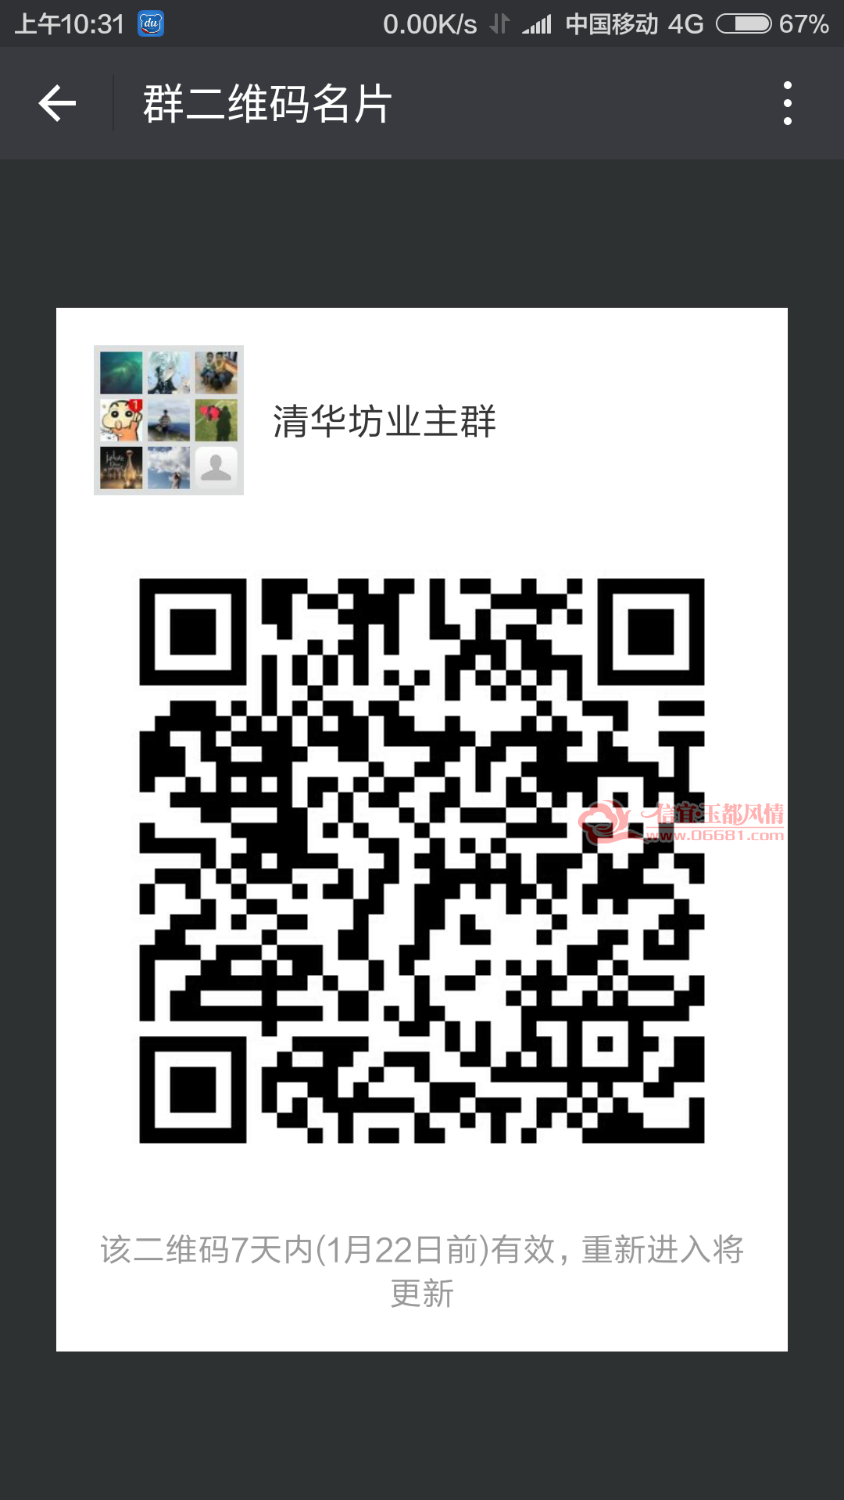 Screenshot_2018-01-15-10-31-25_com.tencent.mm.png